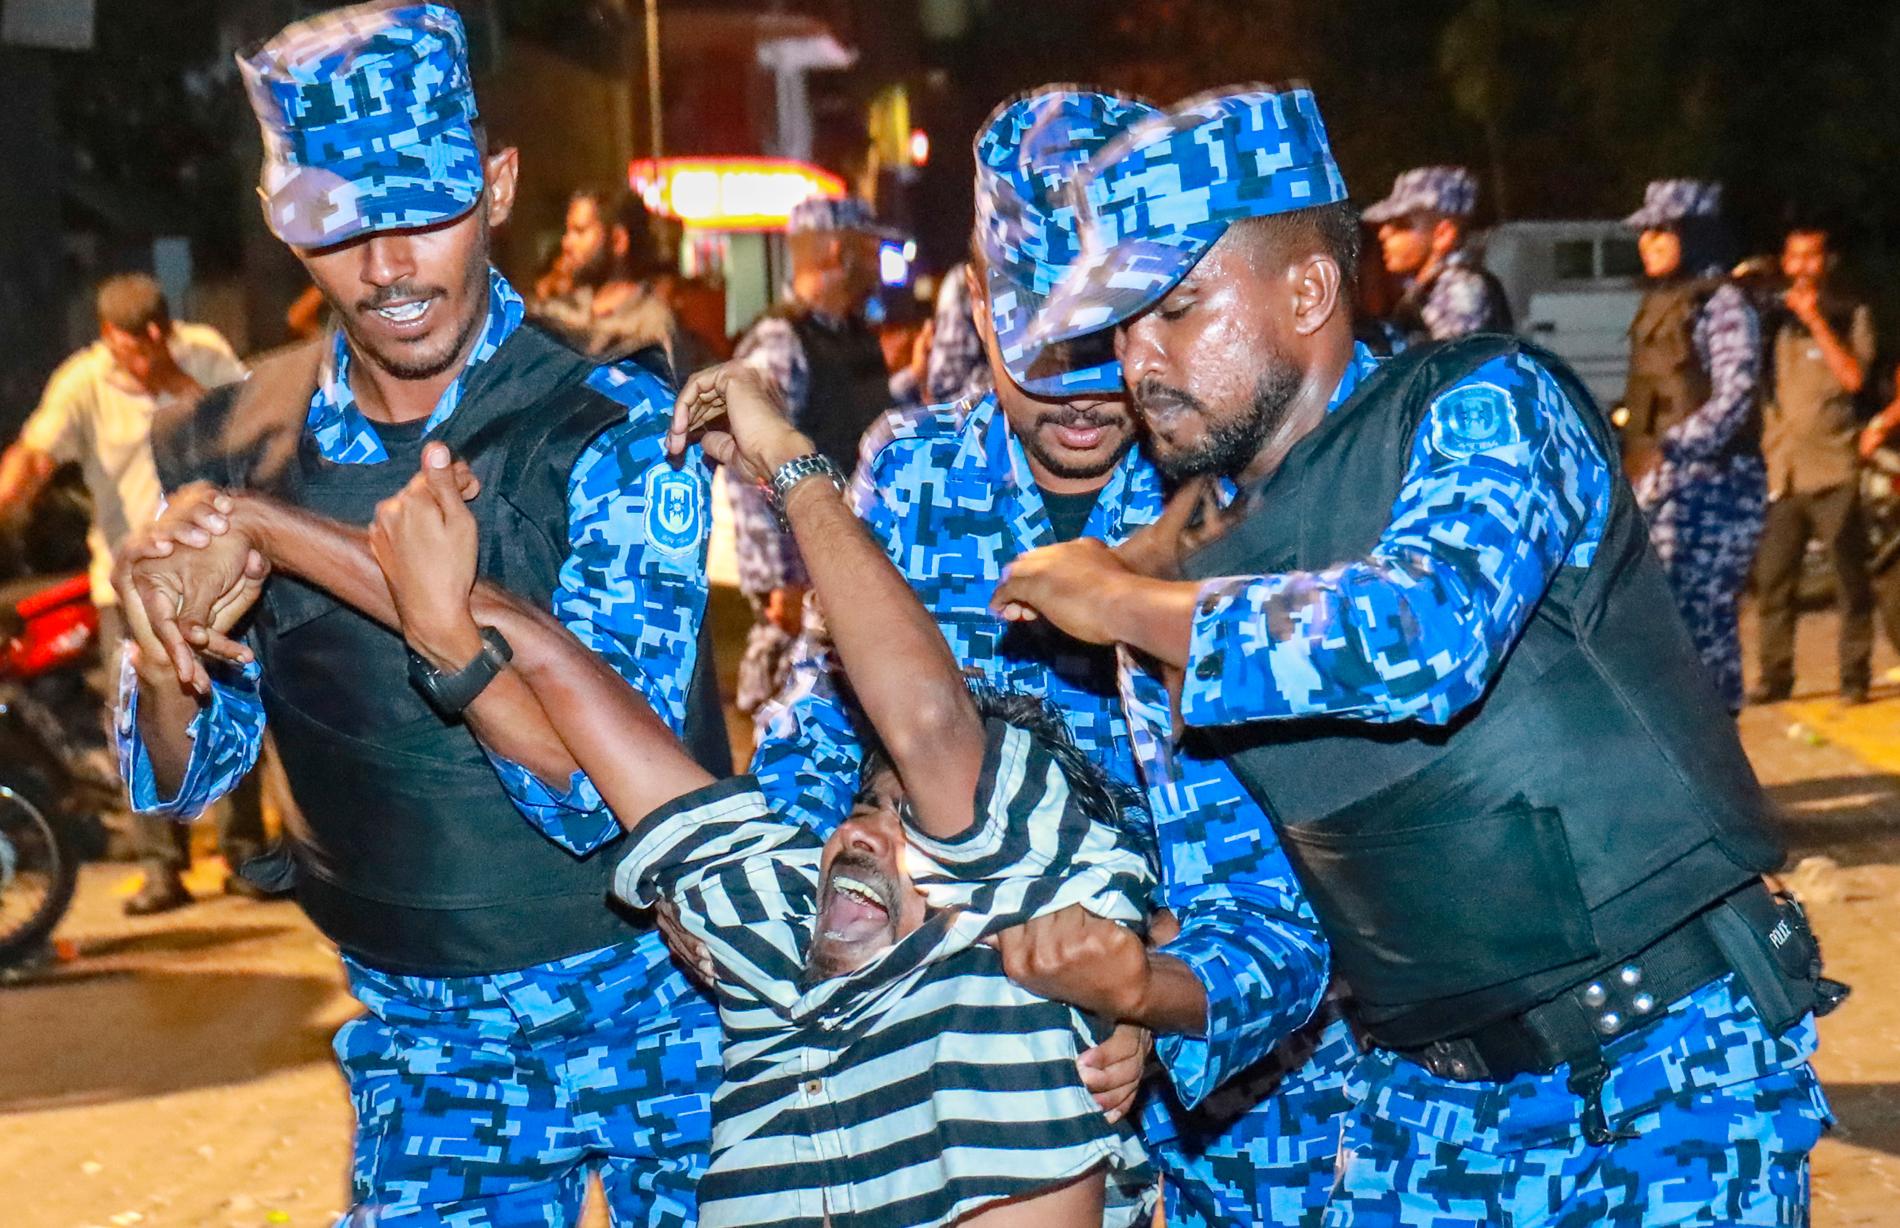 En oppositionell demonstrant grips i samband med en protest i Male i Maldiverna i februari i år. Demonstranterna krävde att de oppositionspolitiker vars domar HD upphävde skulle släppas.